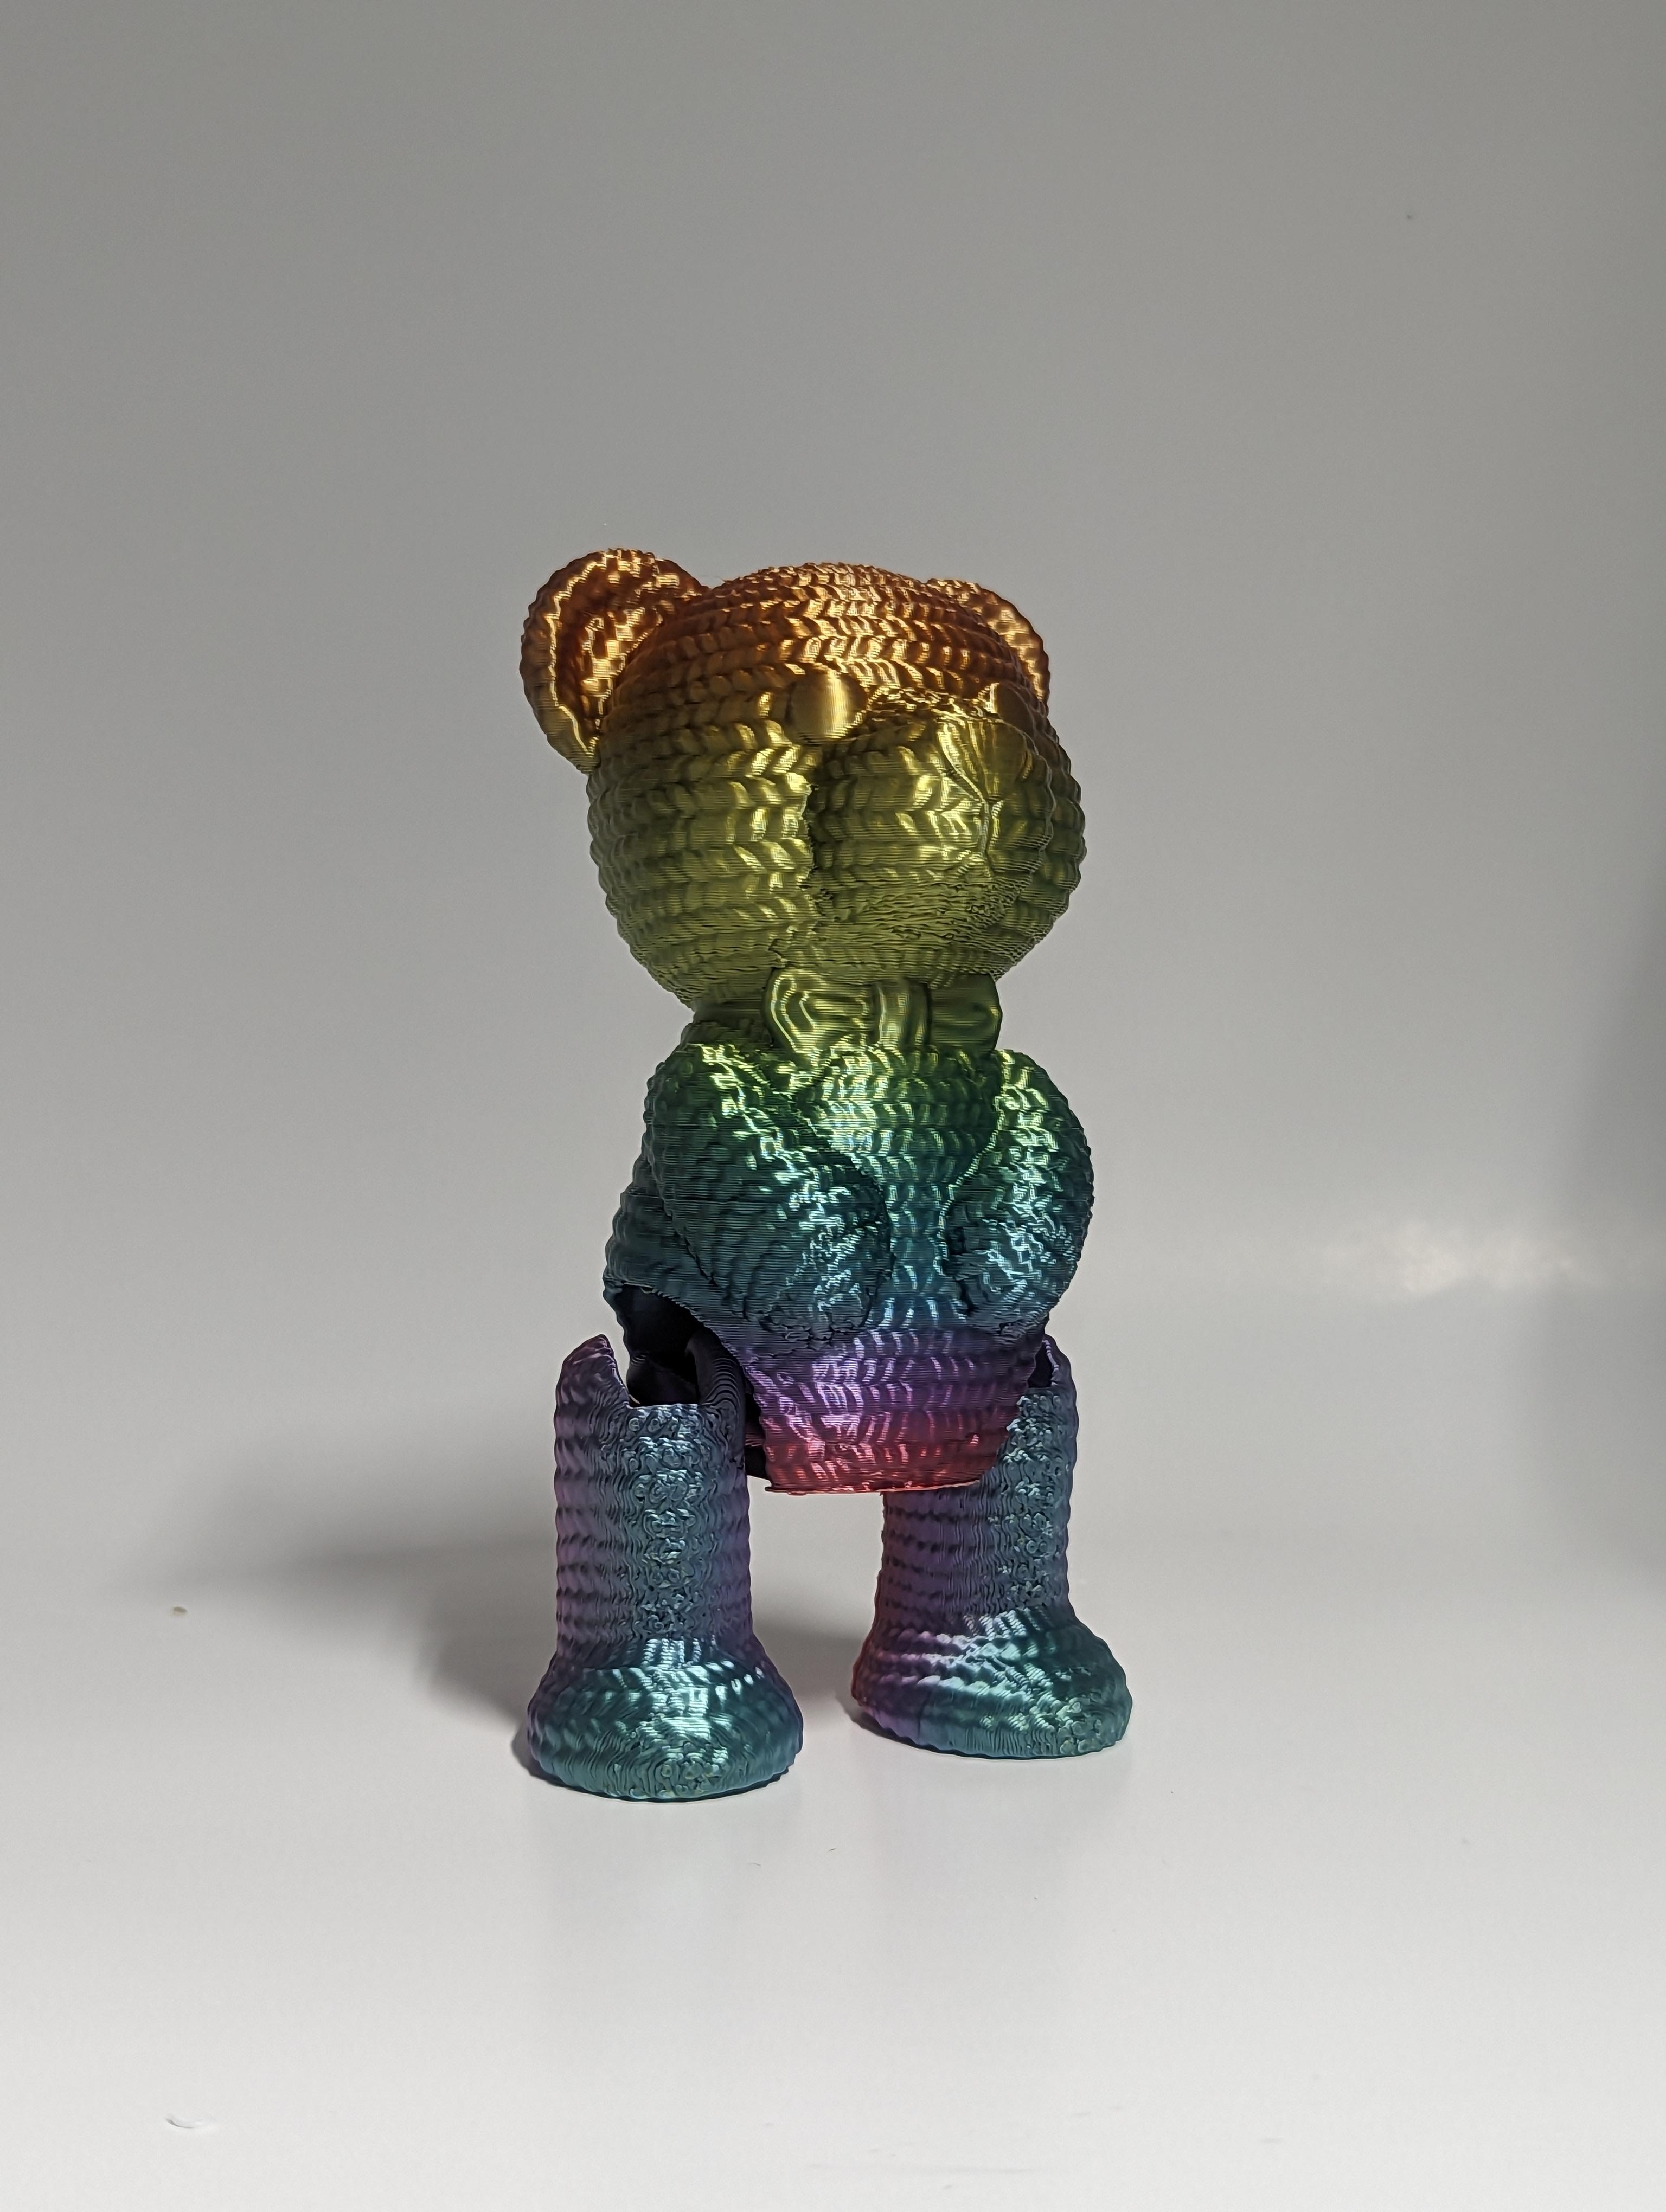 Crochet Teddy Bear 3d model